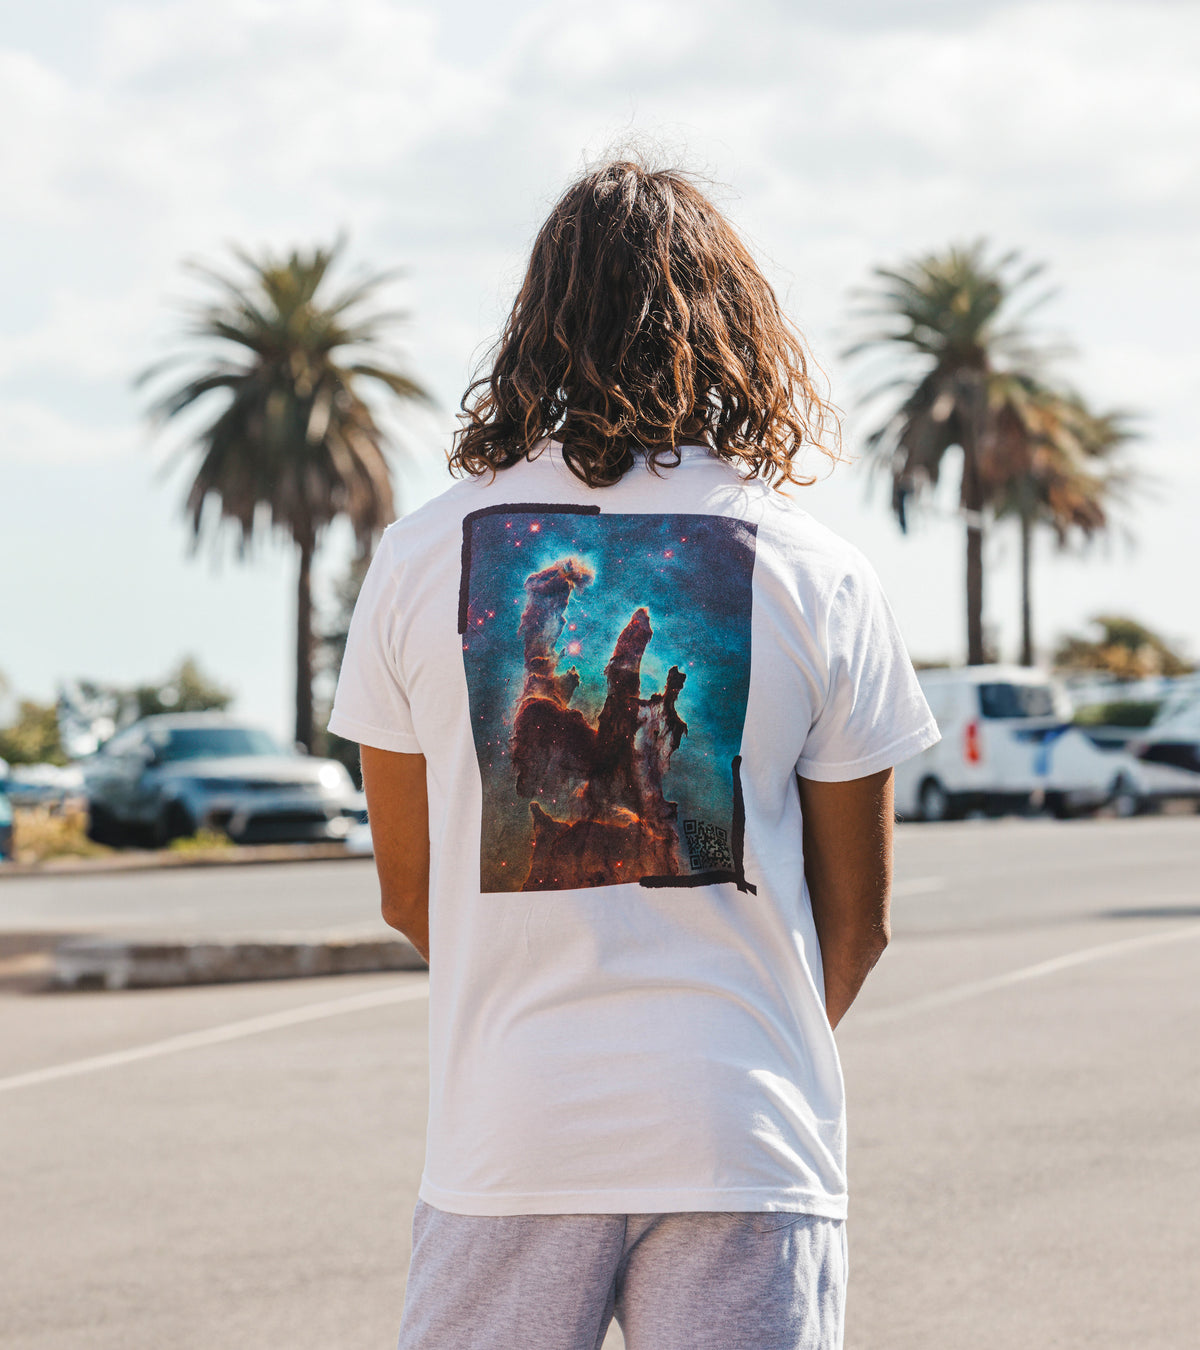 Eagle Nebula T-shirt - Nebula Series